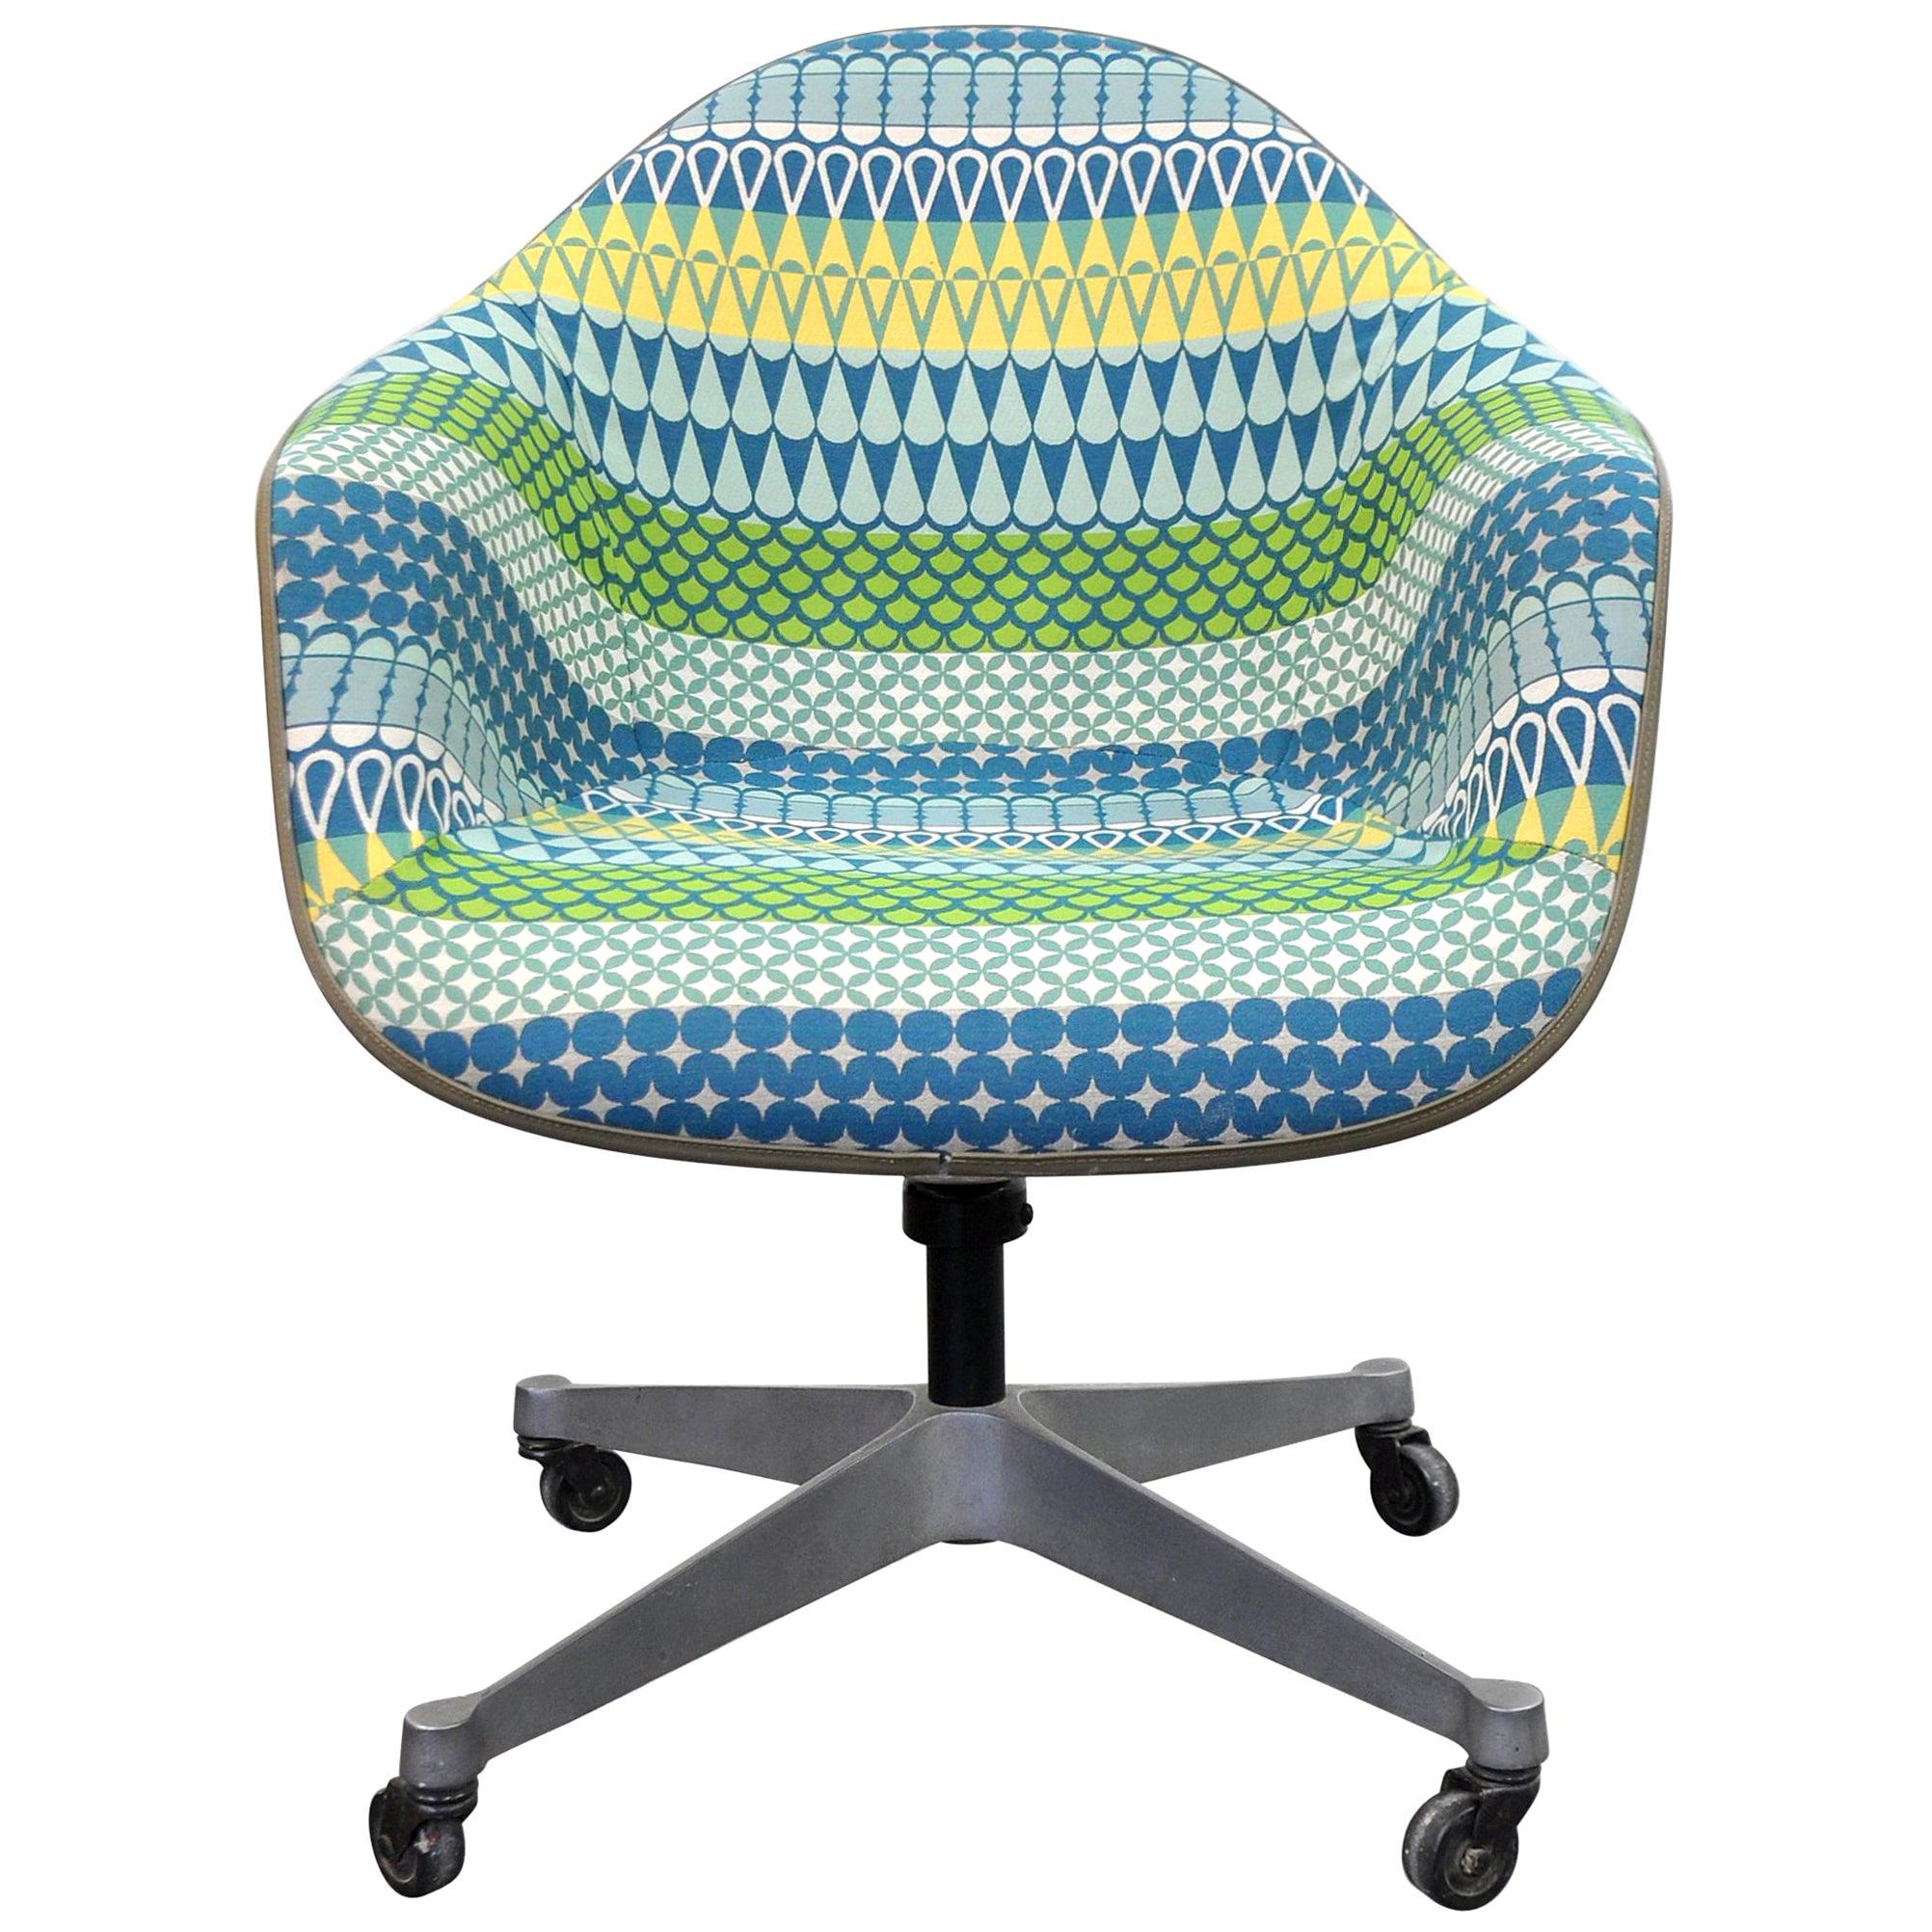 Eames Herman Miller Fiberglass Rolling Shell Chair Alexander Girard Style Fabric